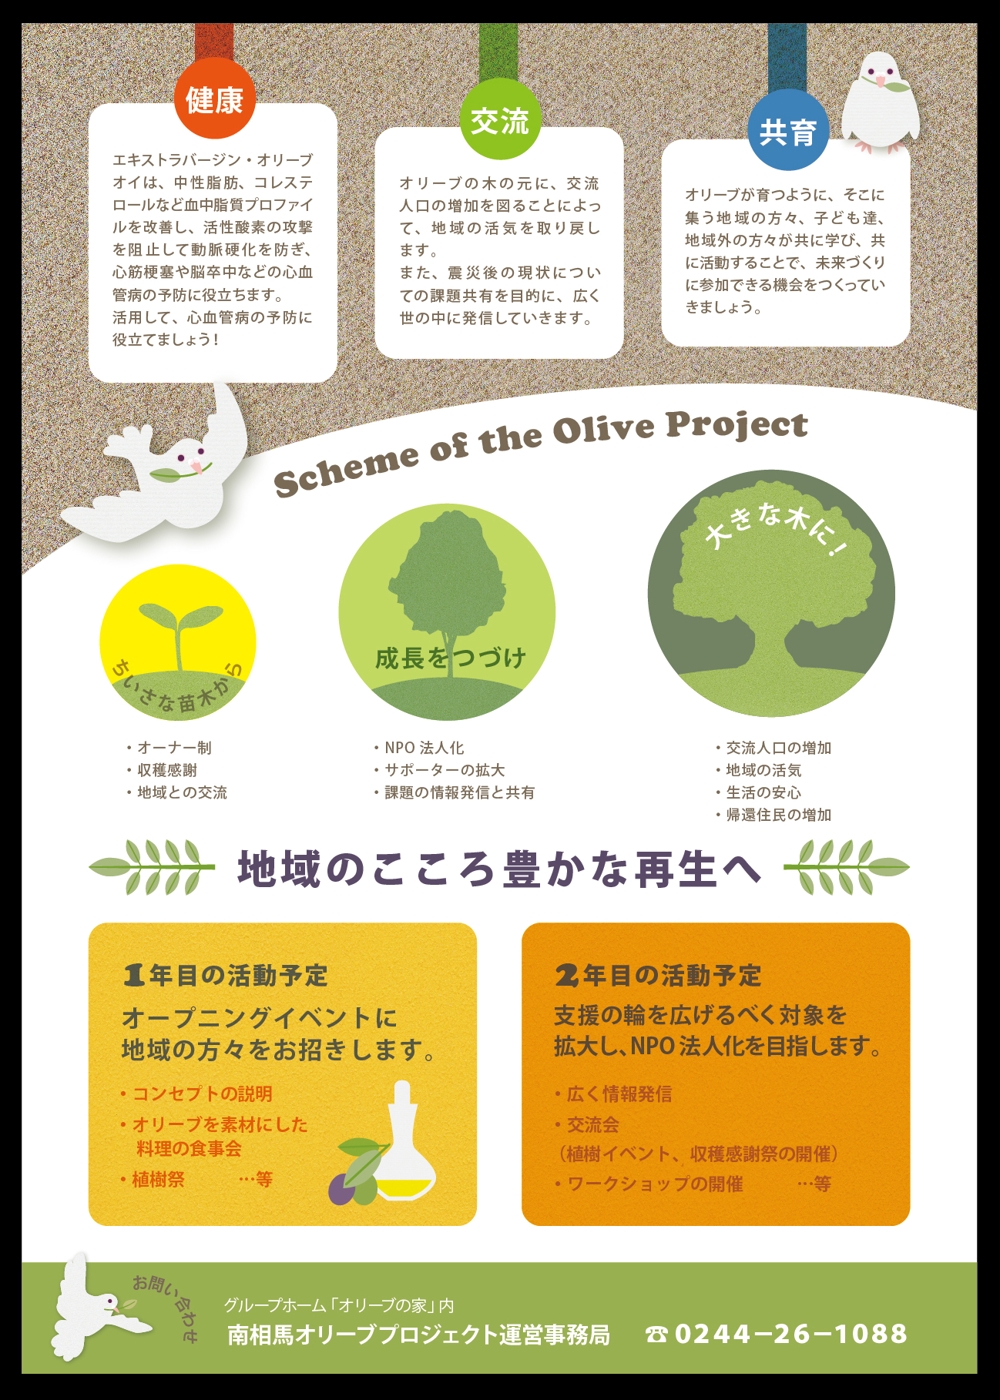 キックオフイベントのフライヤー：参加体験型イベント（オリーブの植樹・収穫・食べる・交流）